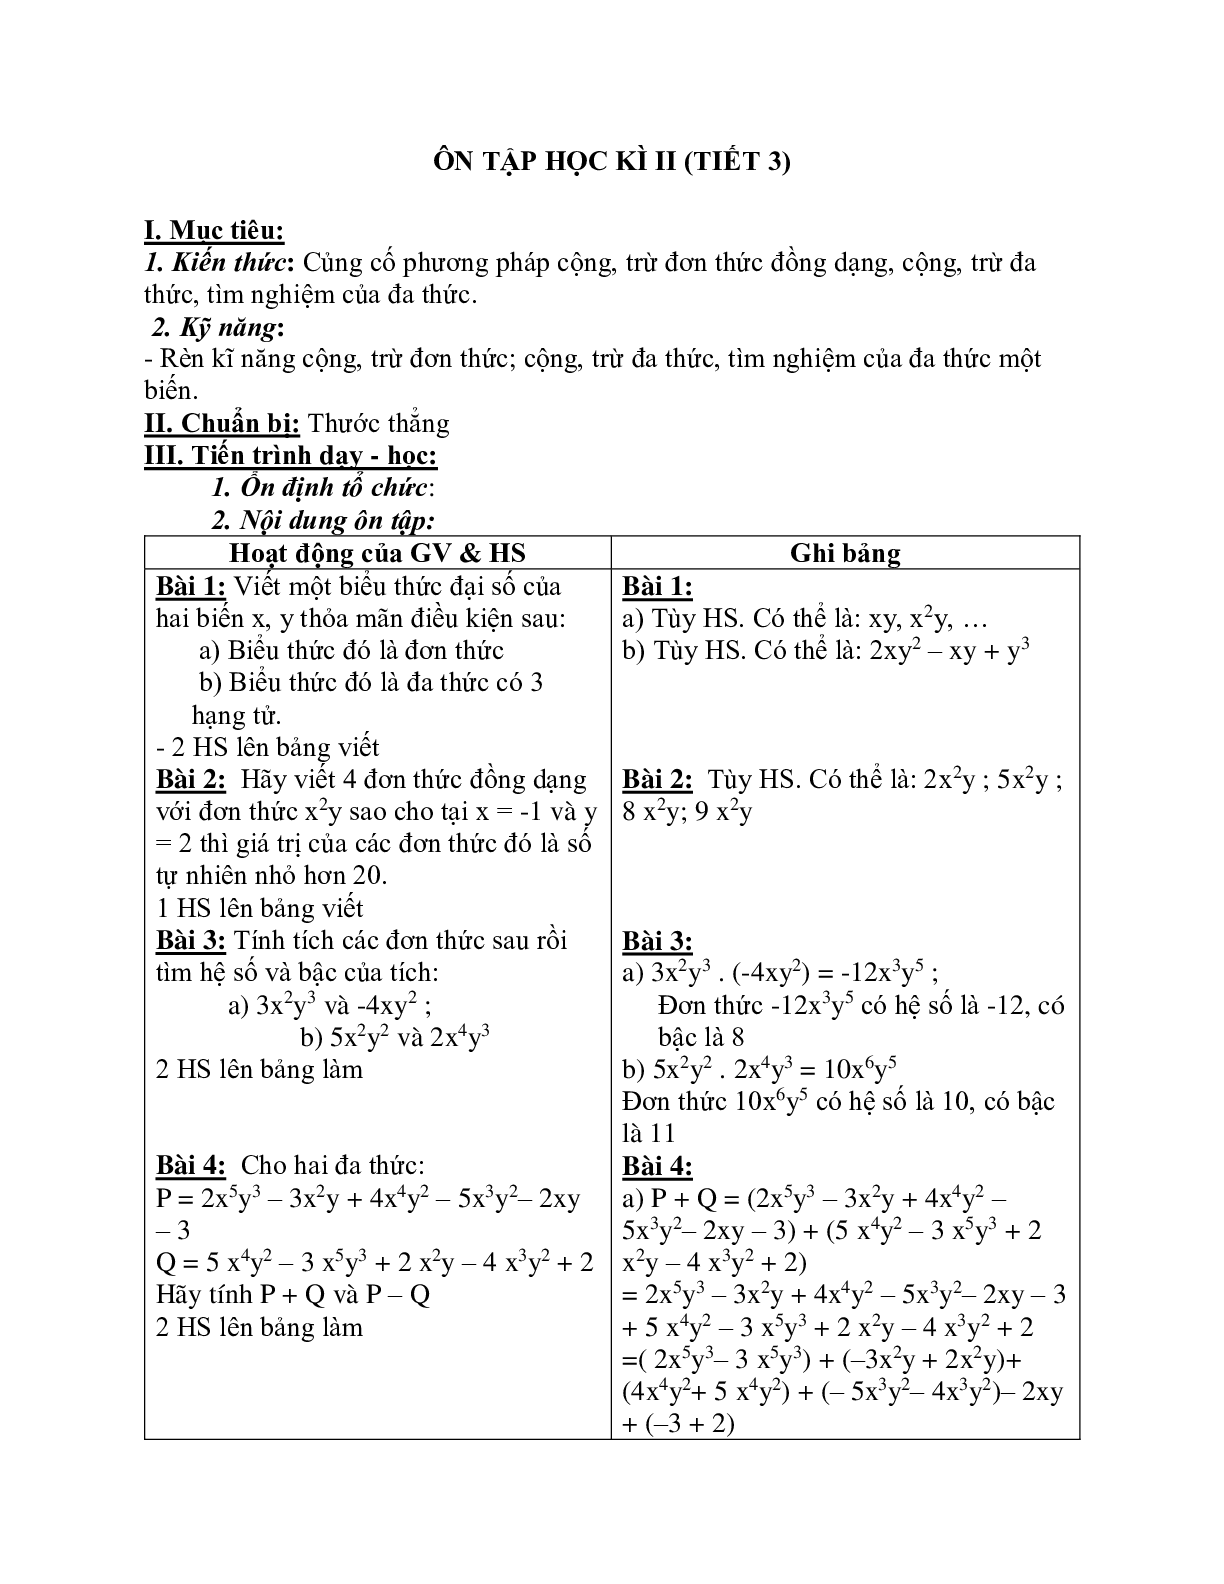 Giáo án Toán học 7: Ôn tập học kì 2 (tiết 3) chuẩn nhất (trang 1)